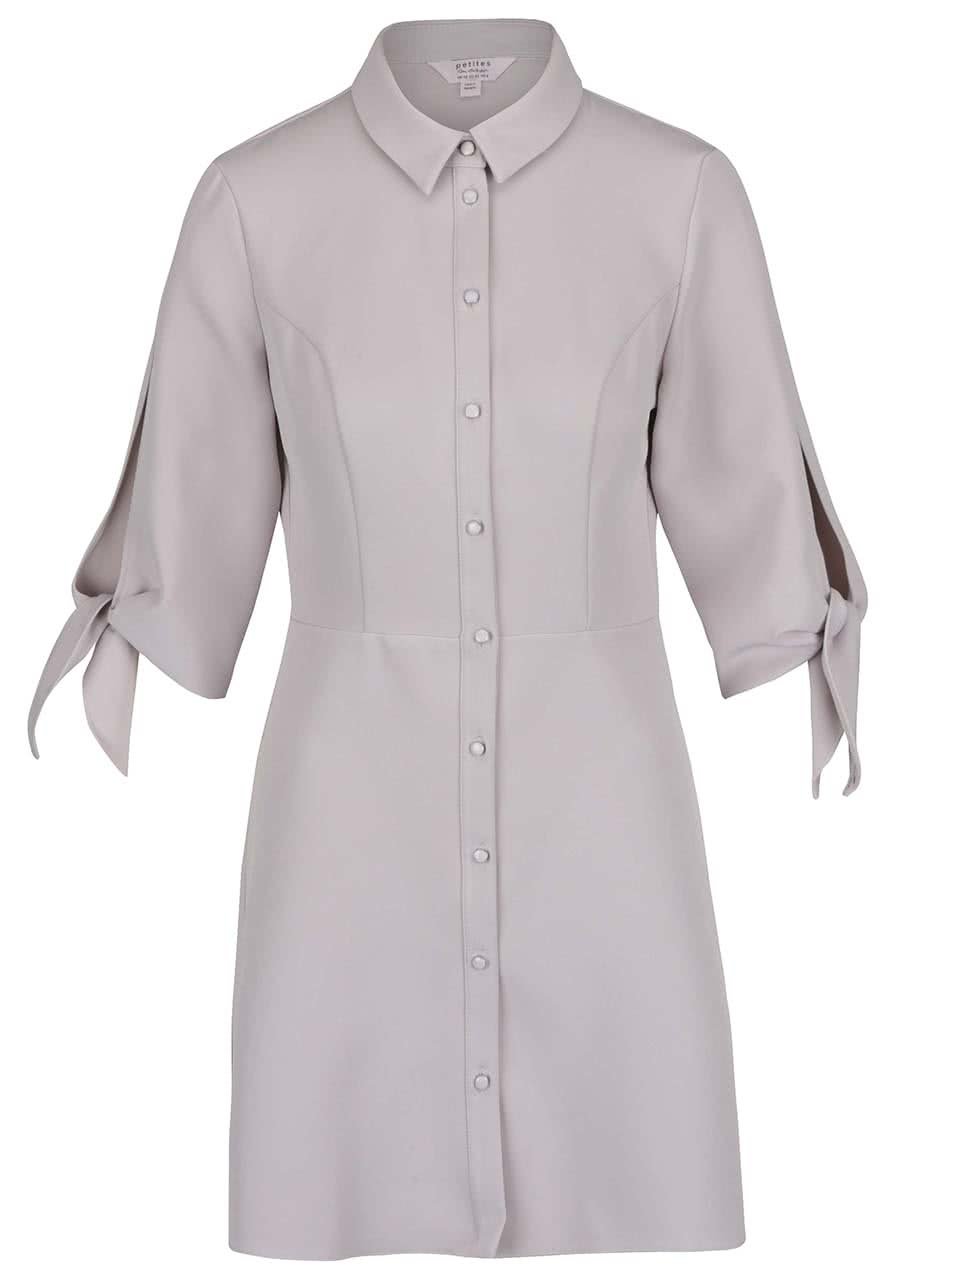 Světle šedé košilové šaty s 3/4 rukávy Miss Selfridge Petites